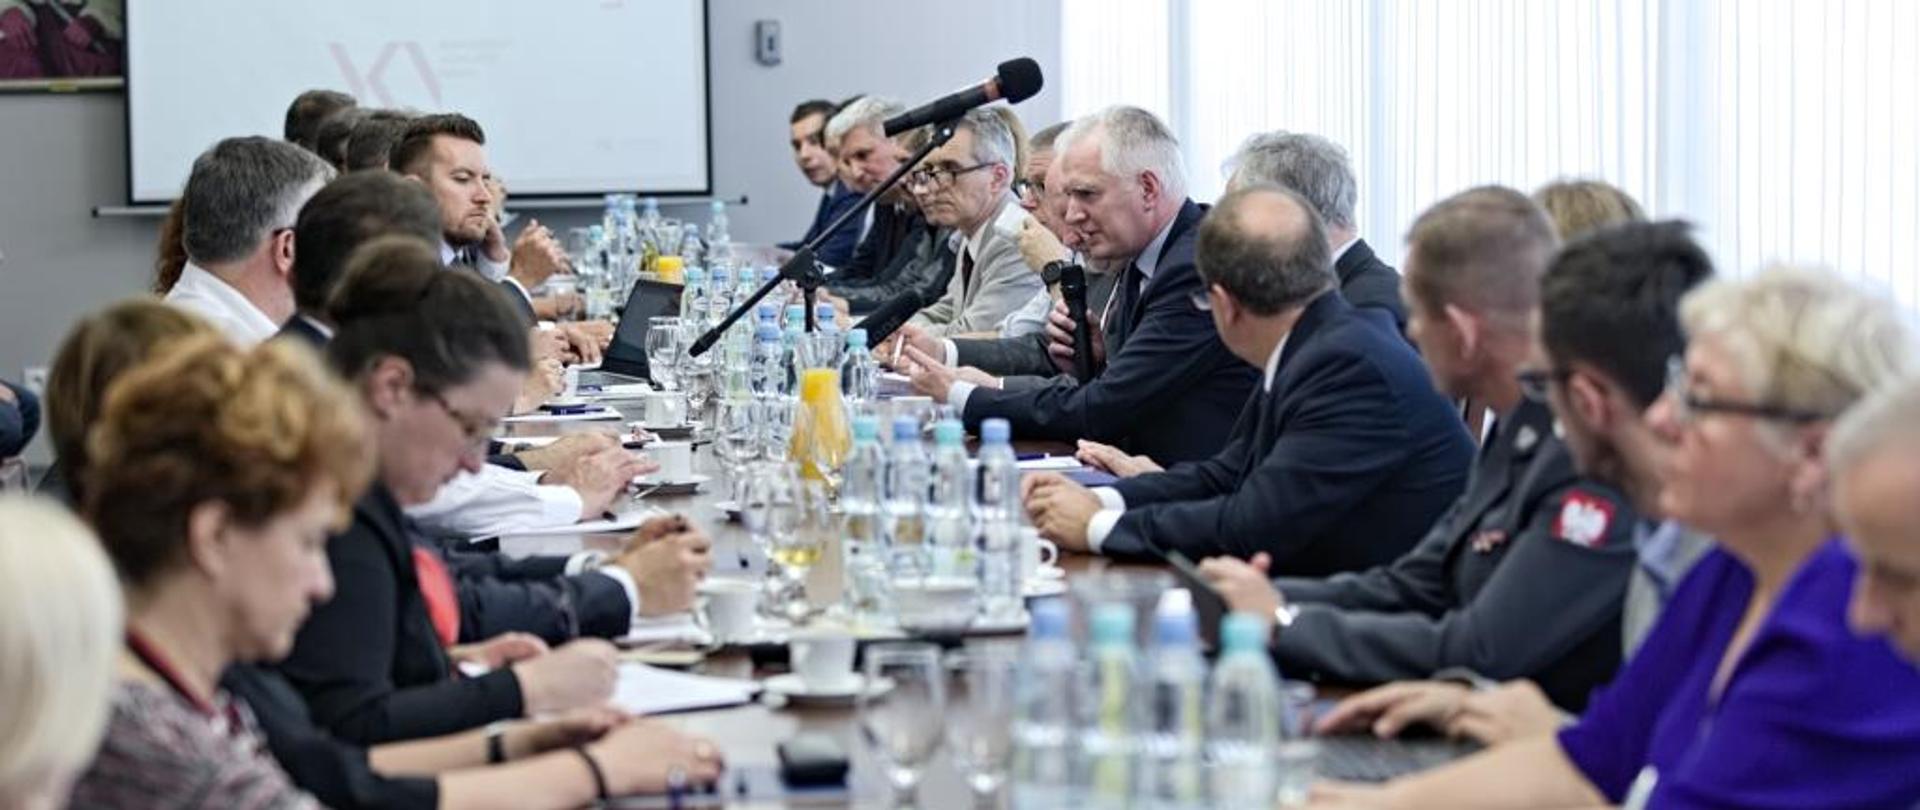 Na zdjęciu widać osoby siedzące przy stole podczas spotkania dot. nowych zasad ewaluacji działalności naukowej na UMCS w Lublinie